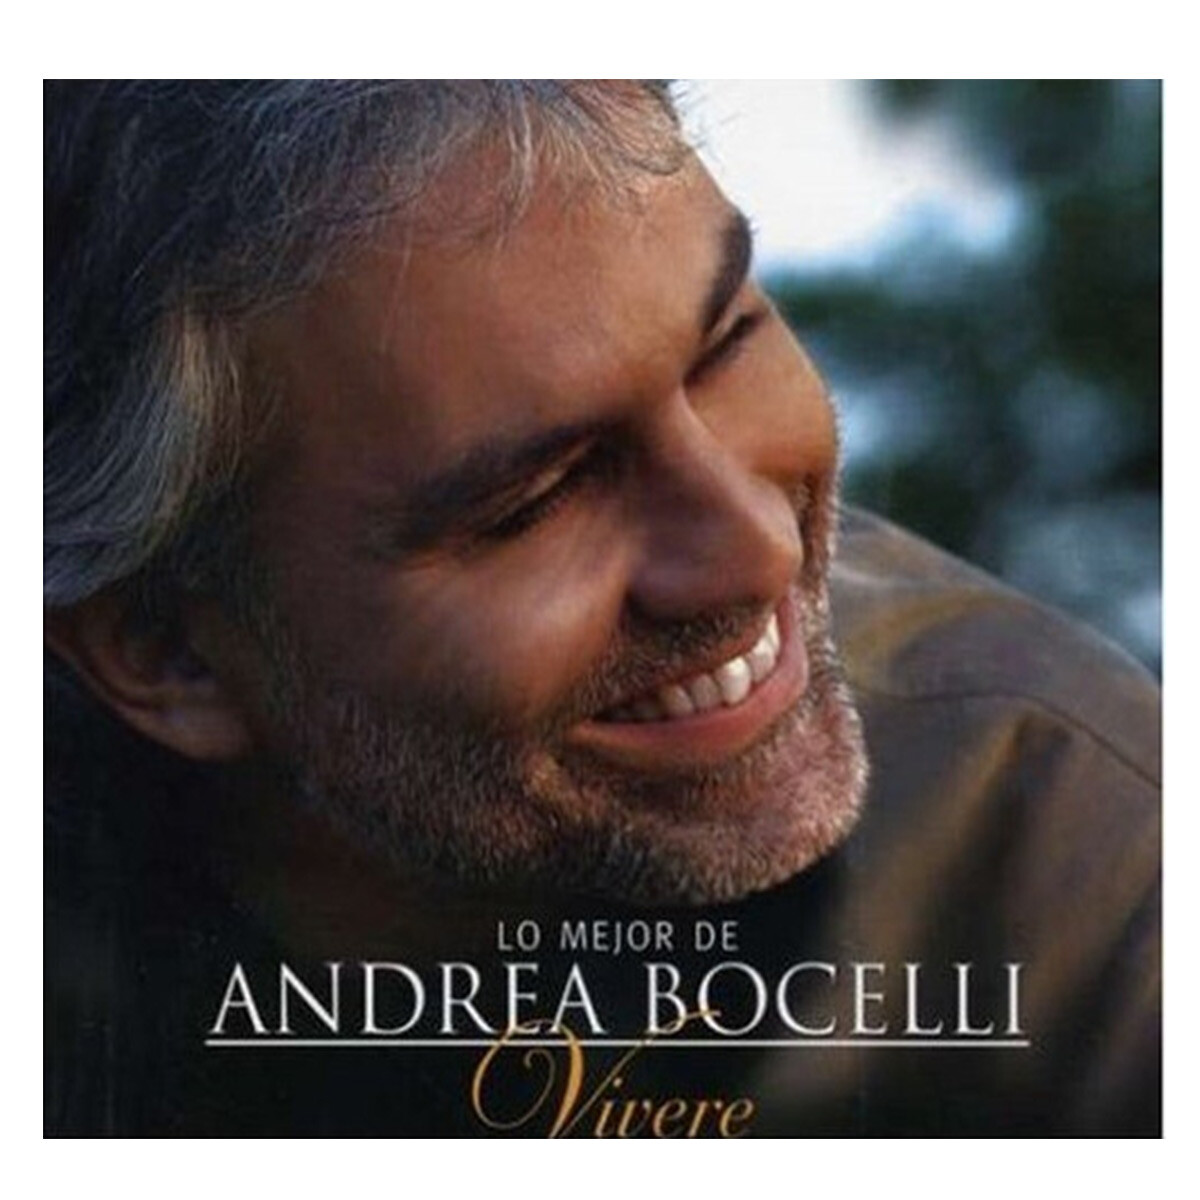 Bocelli Andrea-lo Mejor De...""""""""vivere"""""""" - Cd 